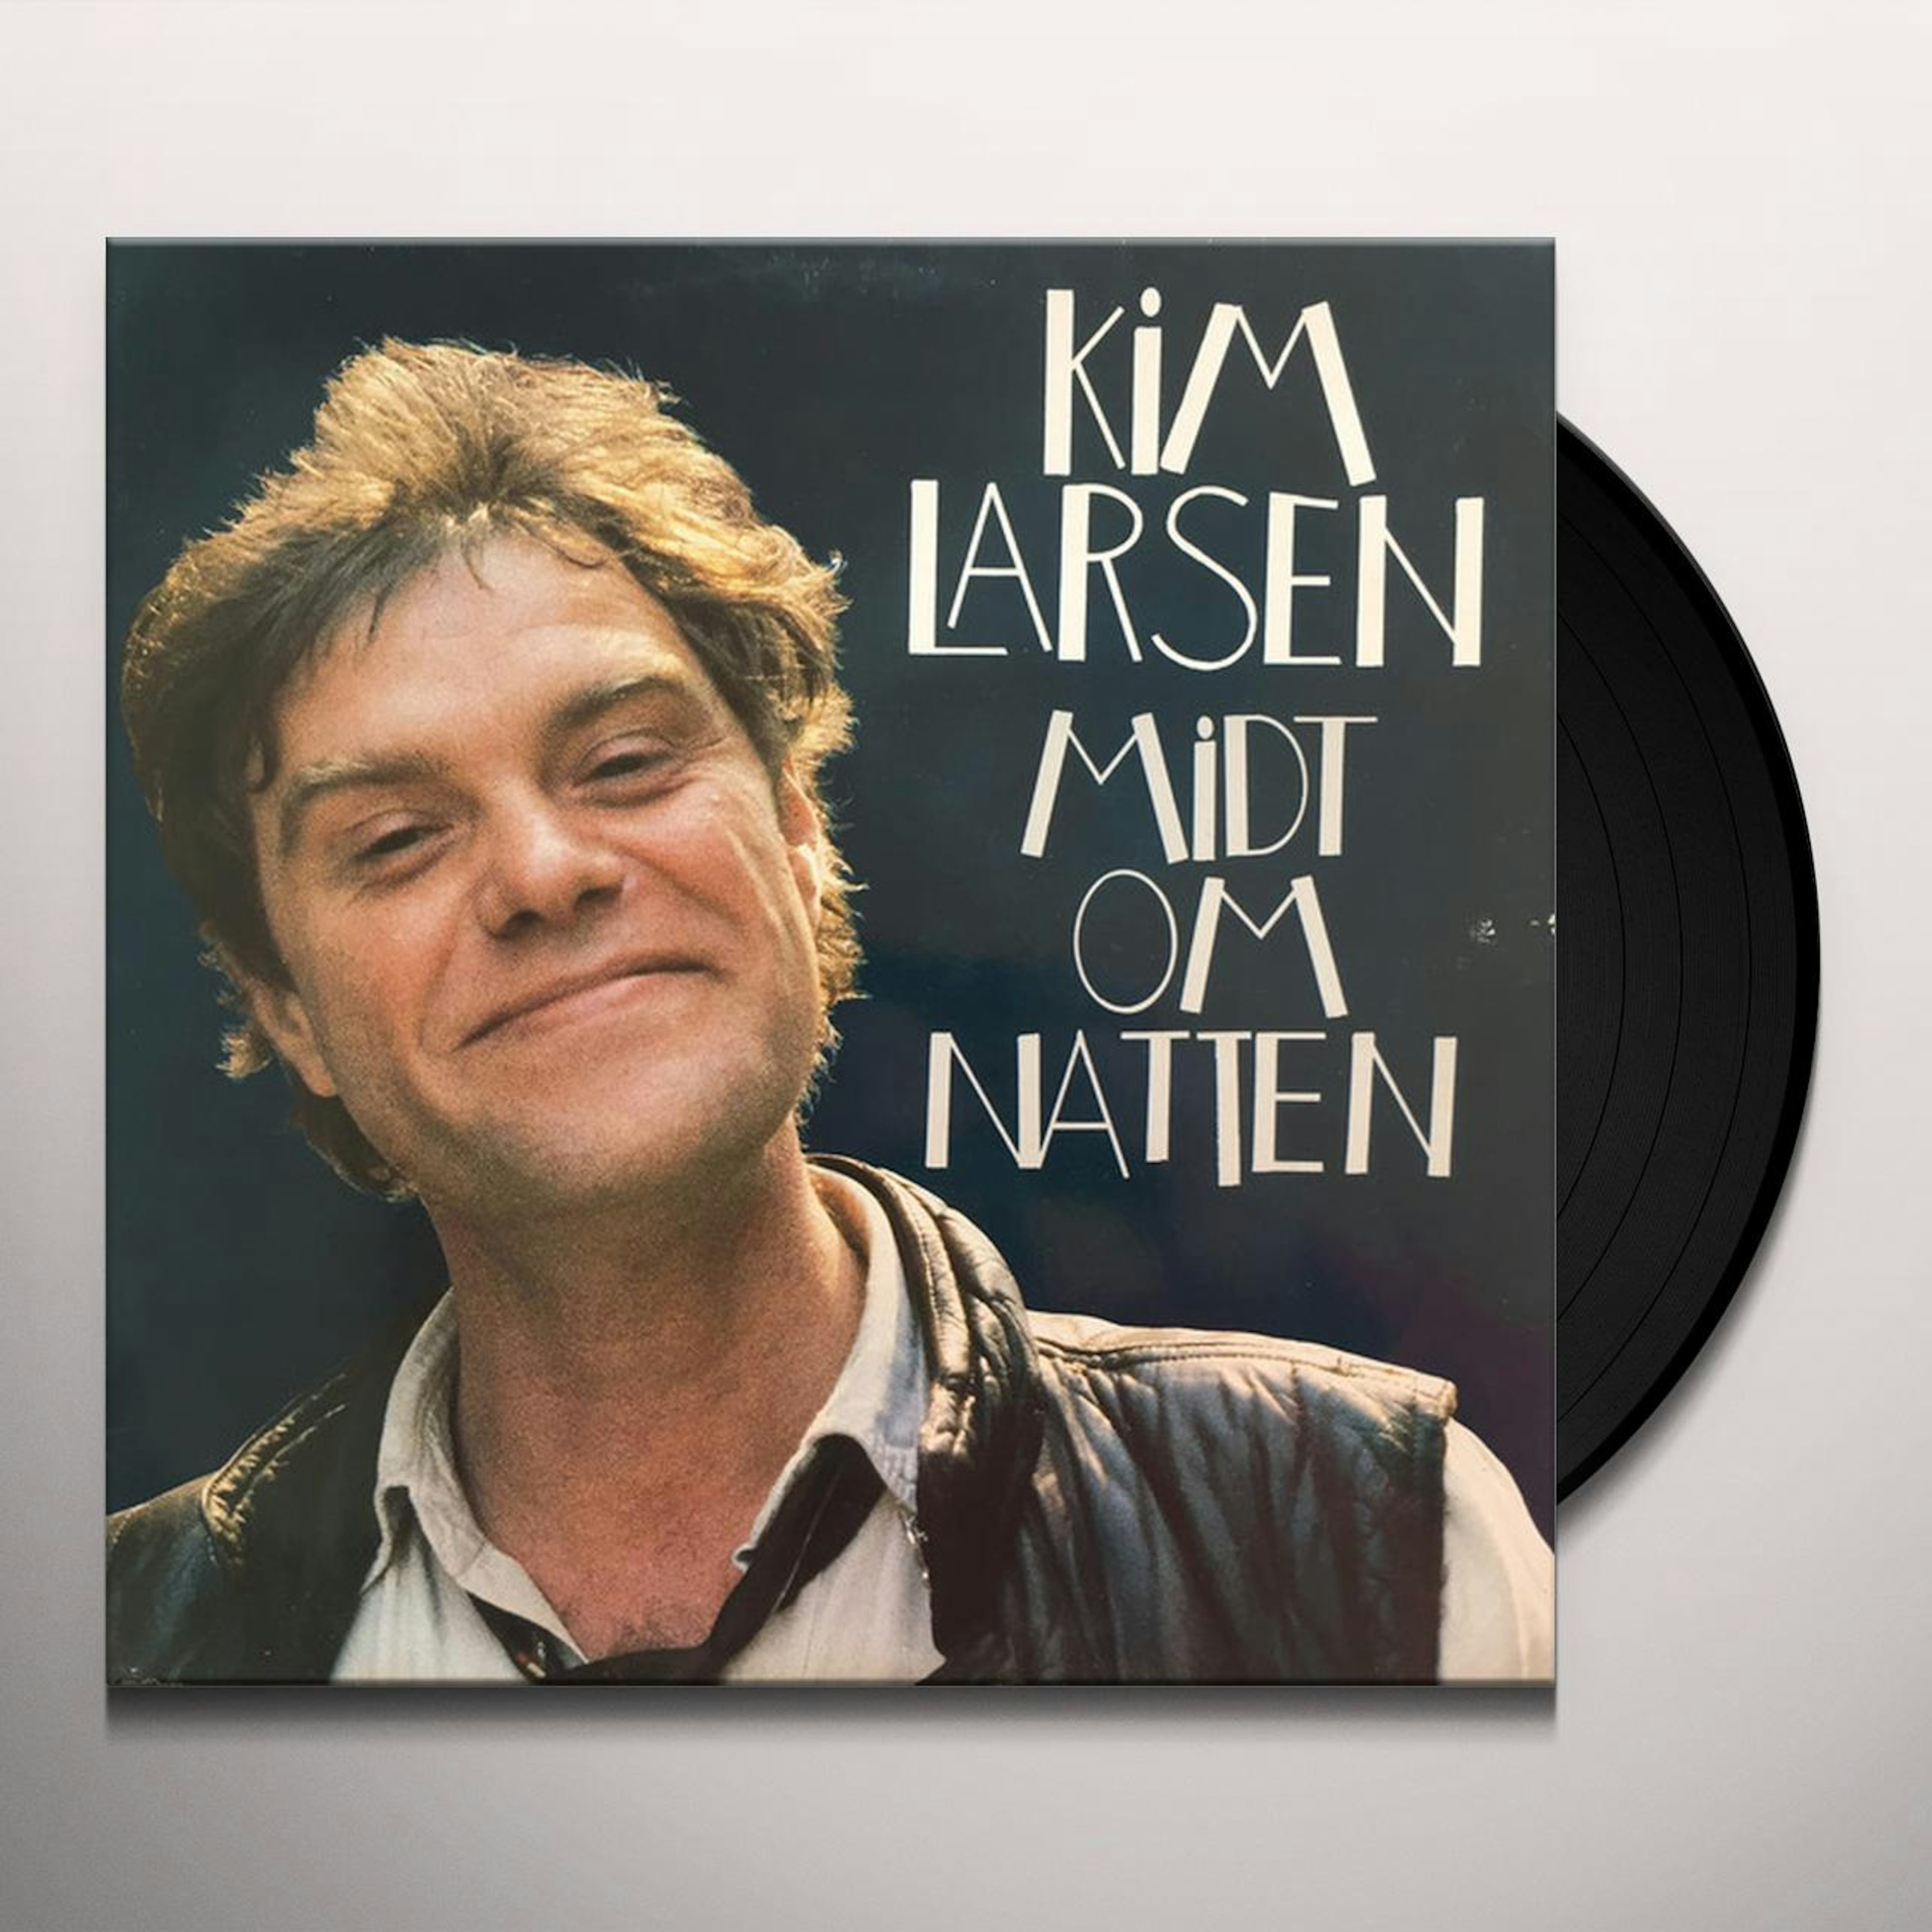 Kim Larsen Midt Om Vinyl